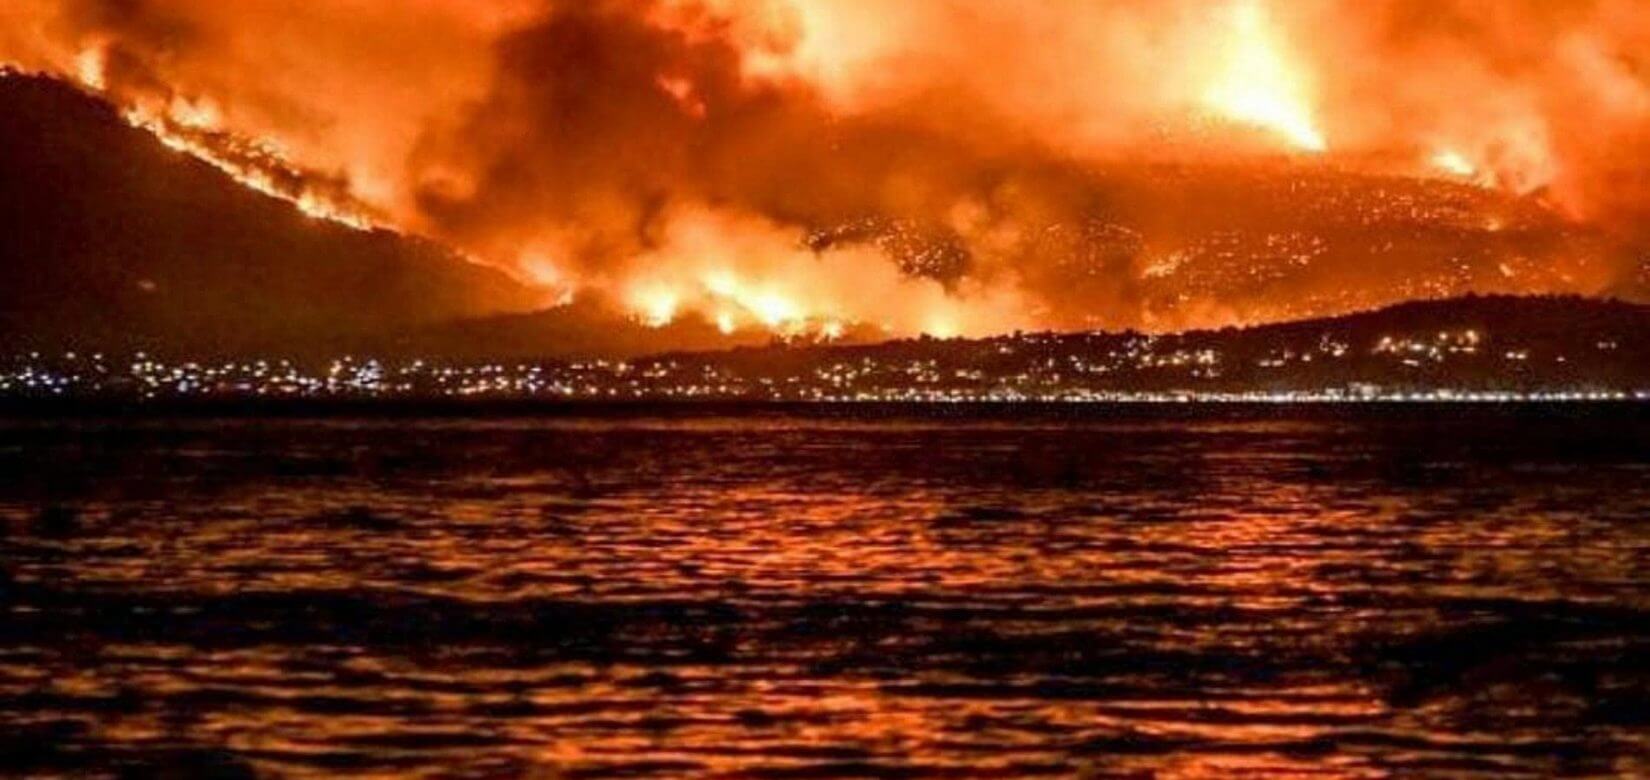 Πυρκαγιές στην Αττική: Η μεγάλη τραγωδία σε 10 +1 συγκλονιστικά στιγμιότυπα